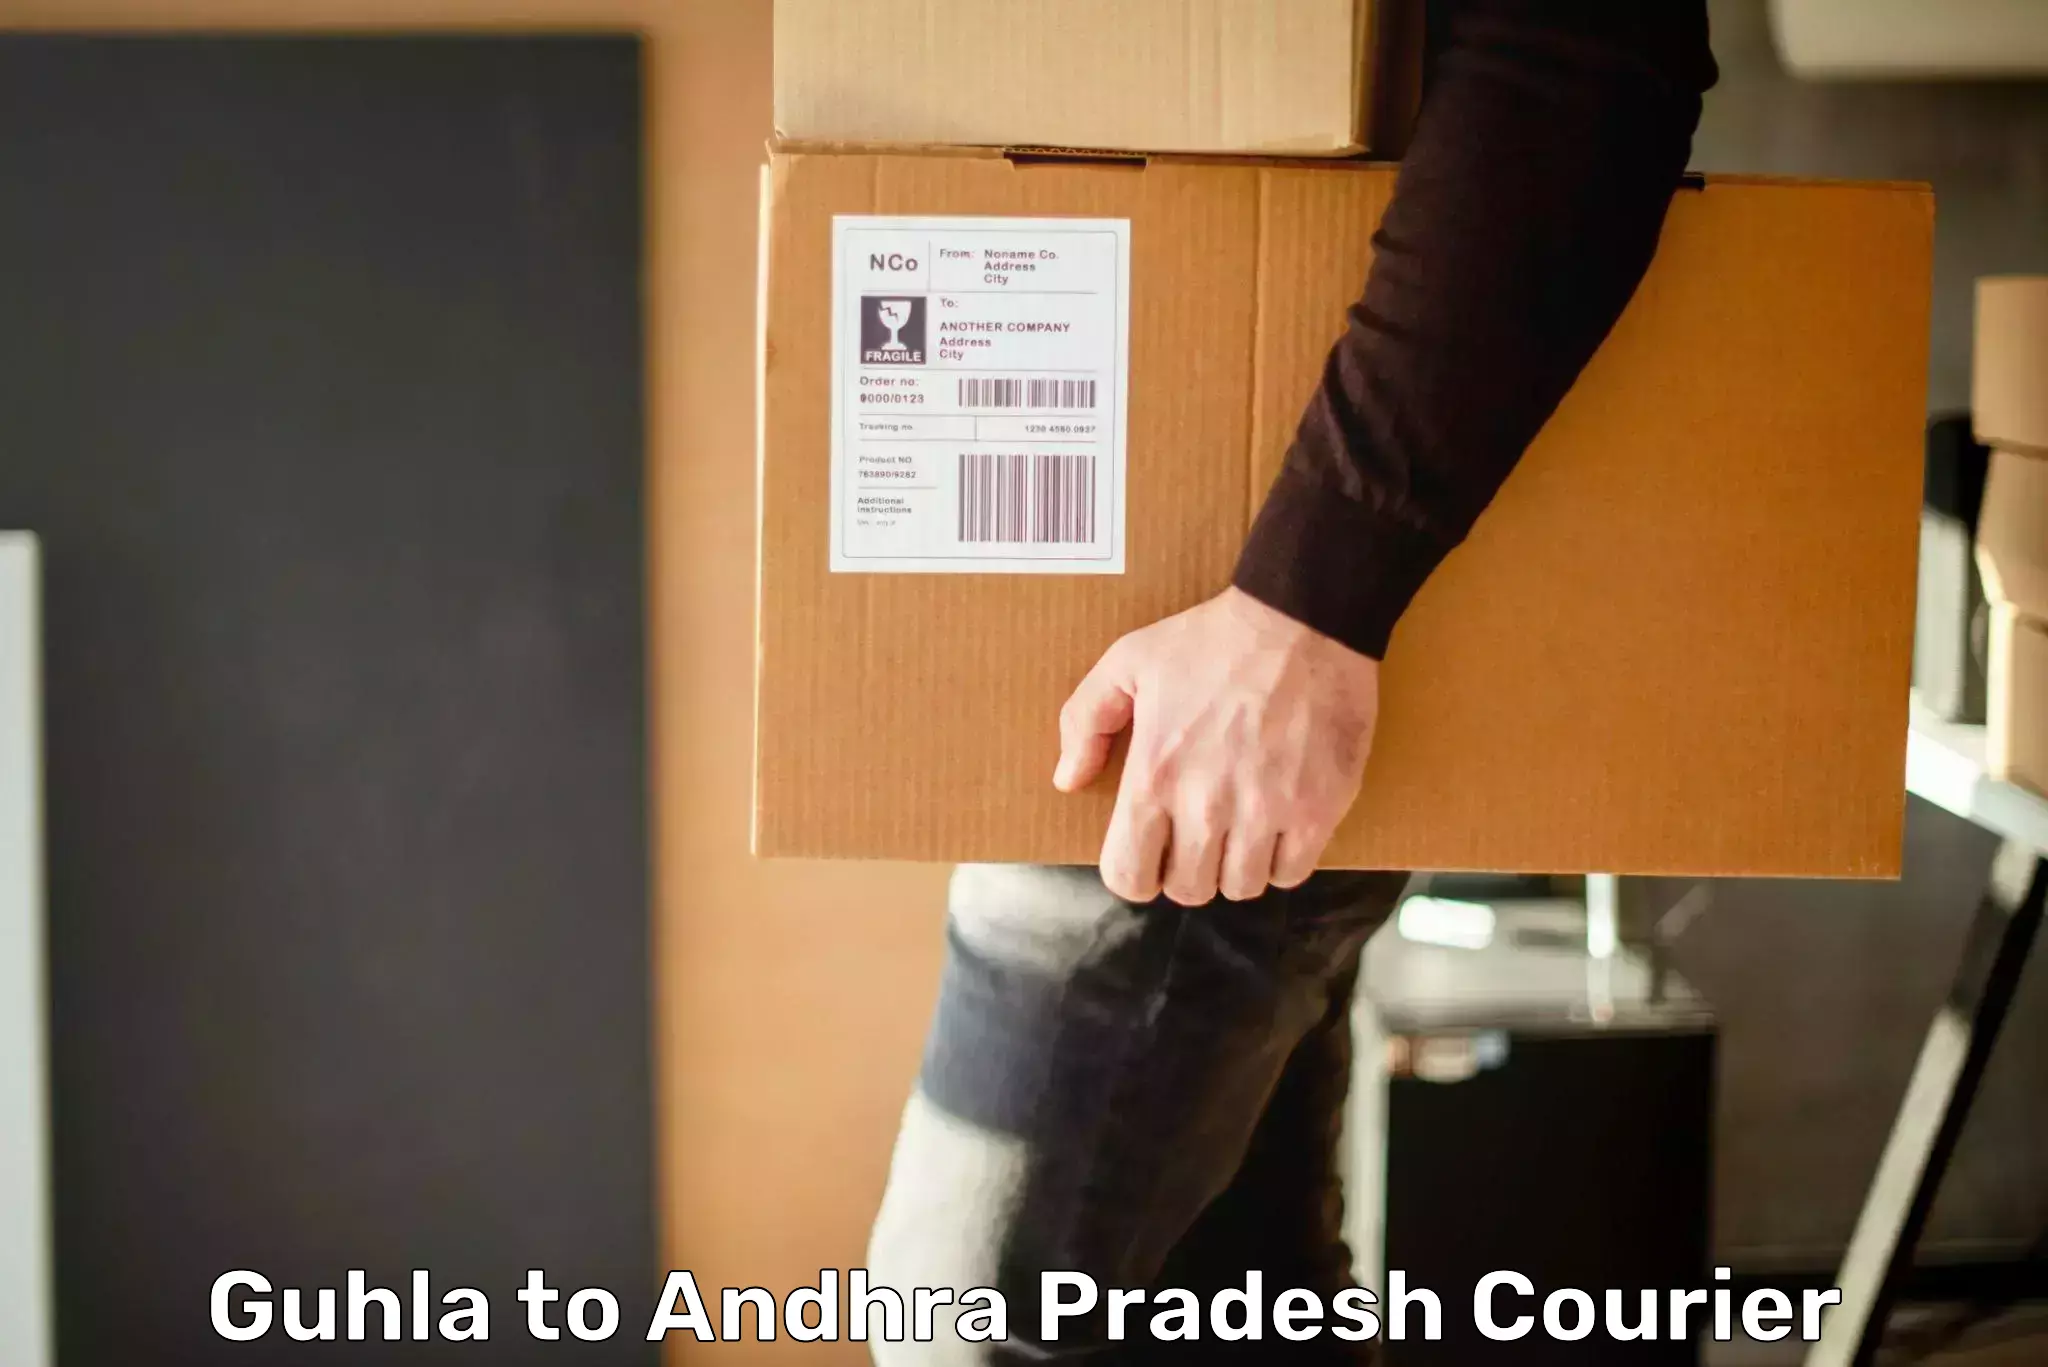 Innovative shipping solutions Guhla to Andhra Pradesh